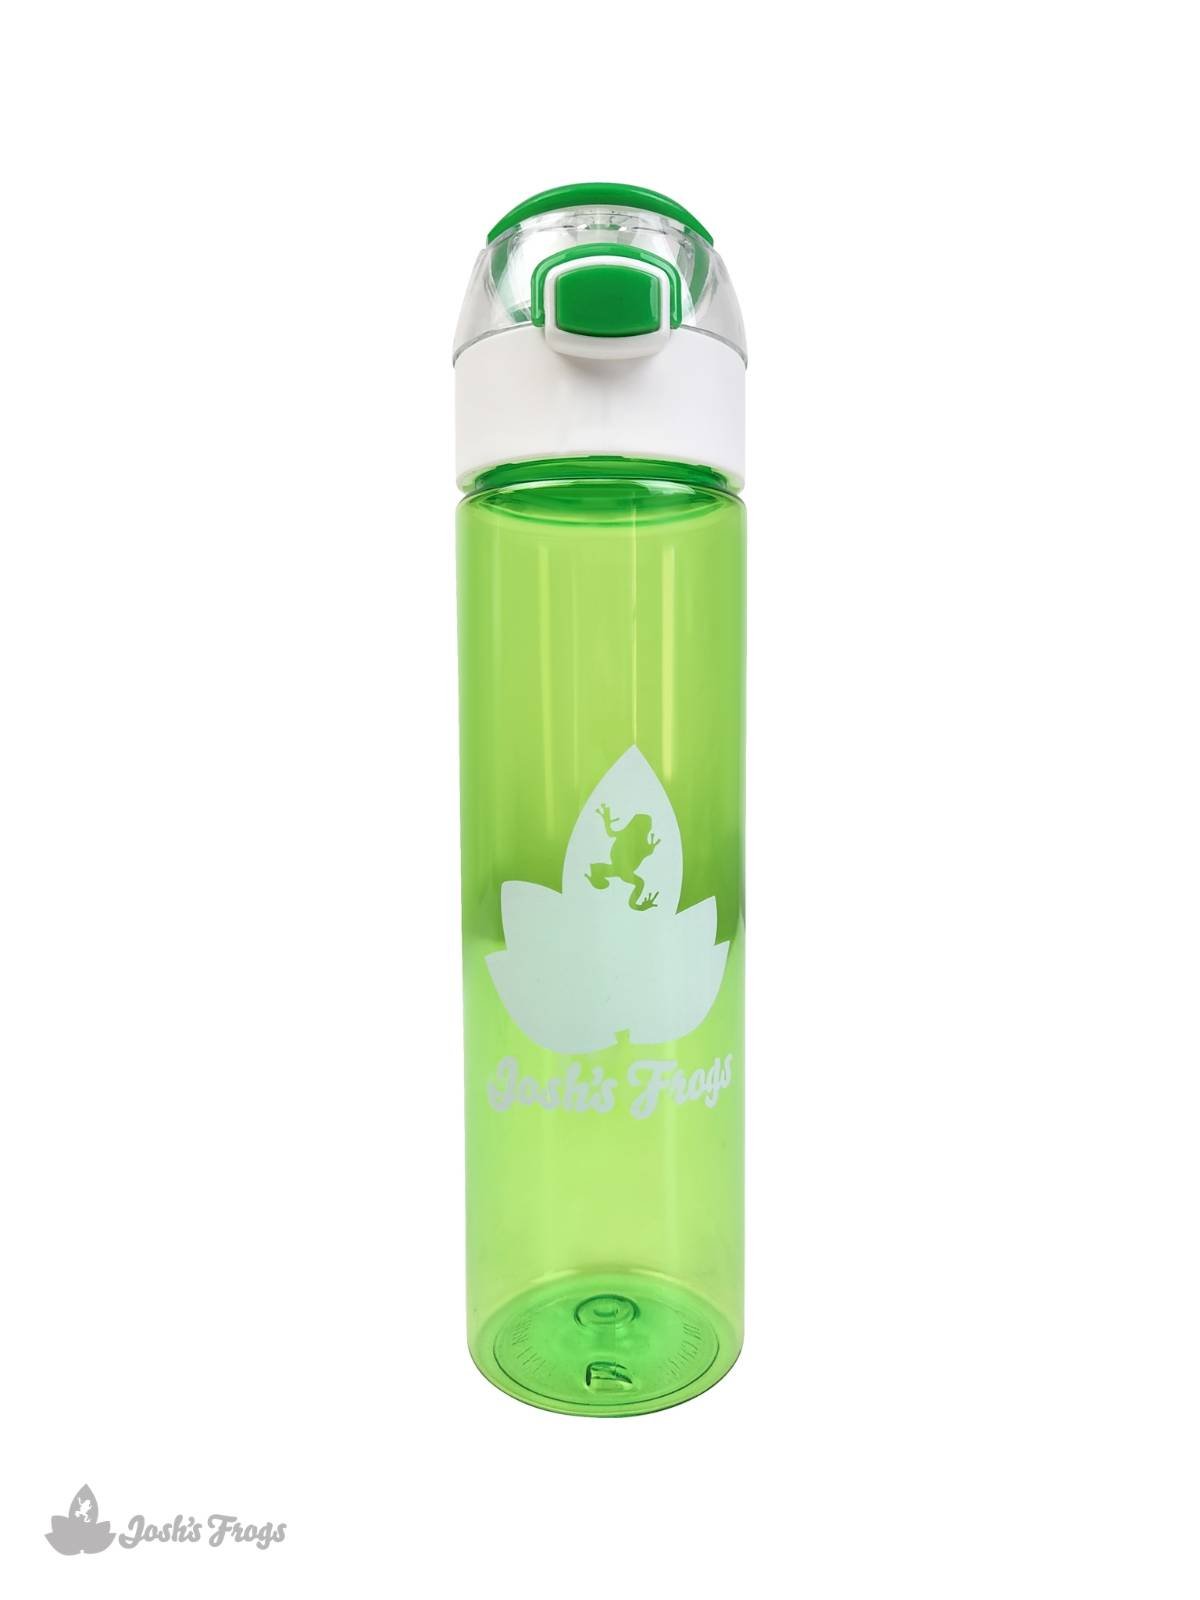 https://joshsfrogs.com/media/image/josh_s_frogs_lime_green_water_bottle_23_oz_-1-0fcbefaa.jpg